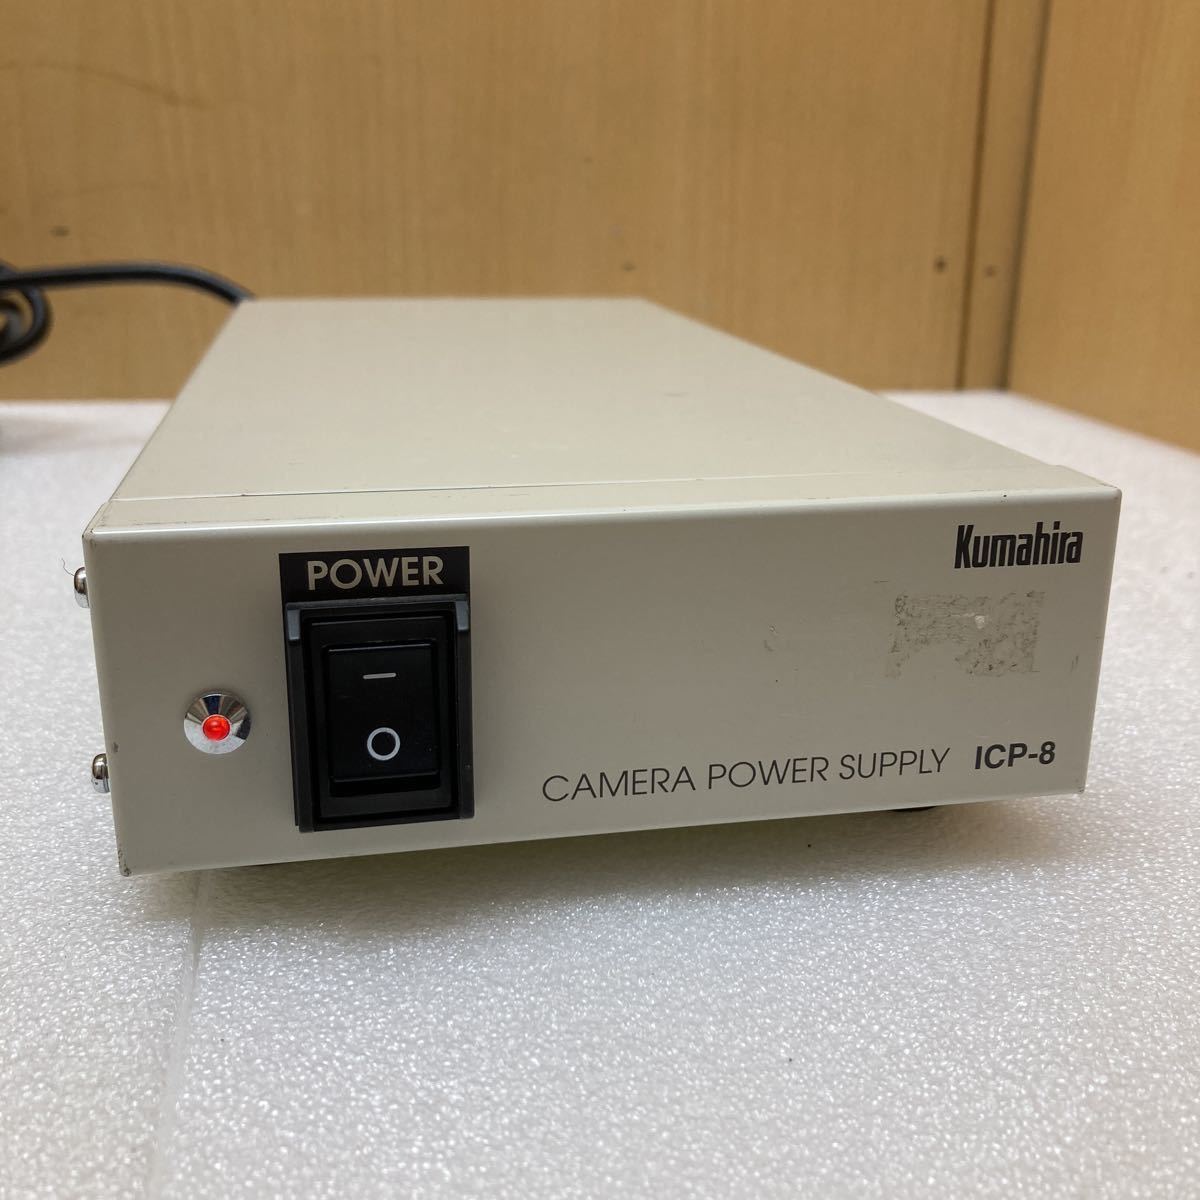 YK4236 Kumahira камера источник питания ICP-8 электризация подтверждено текущее состояние товар 0622